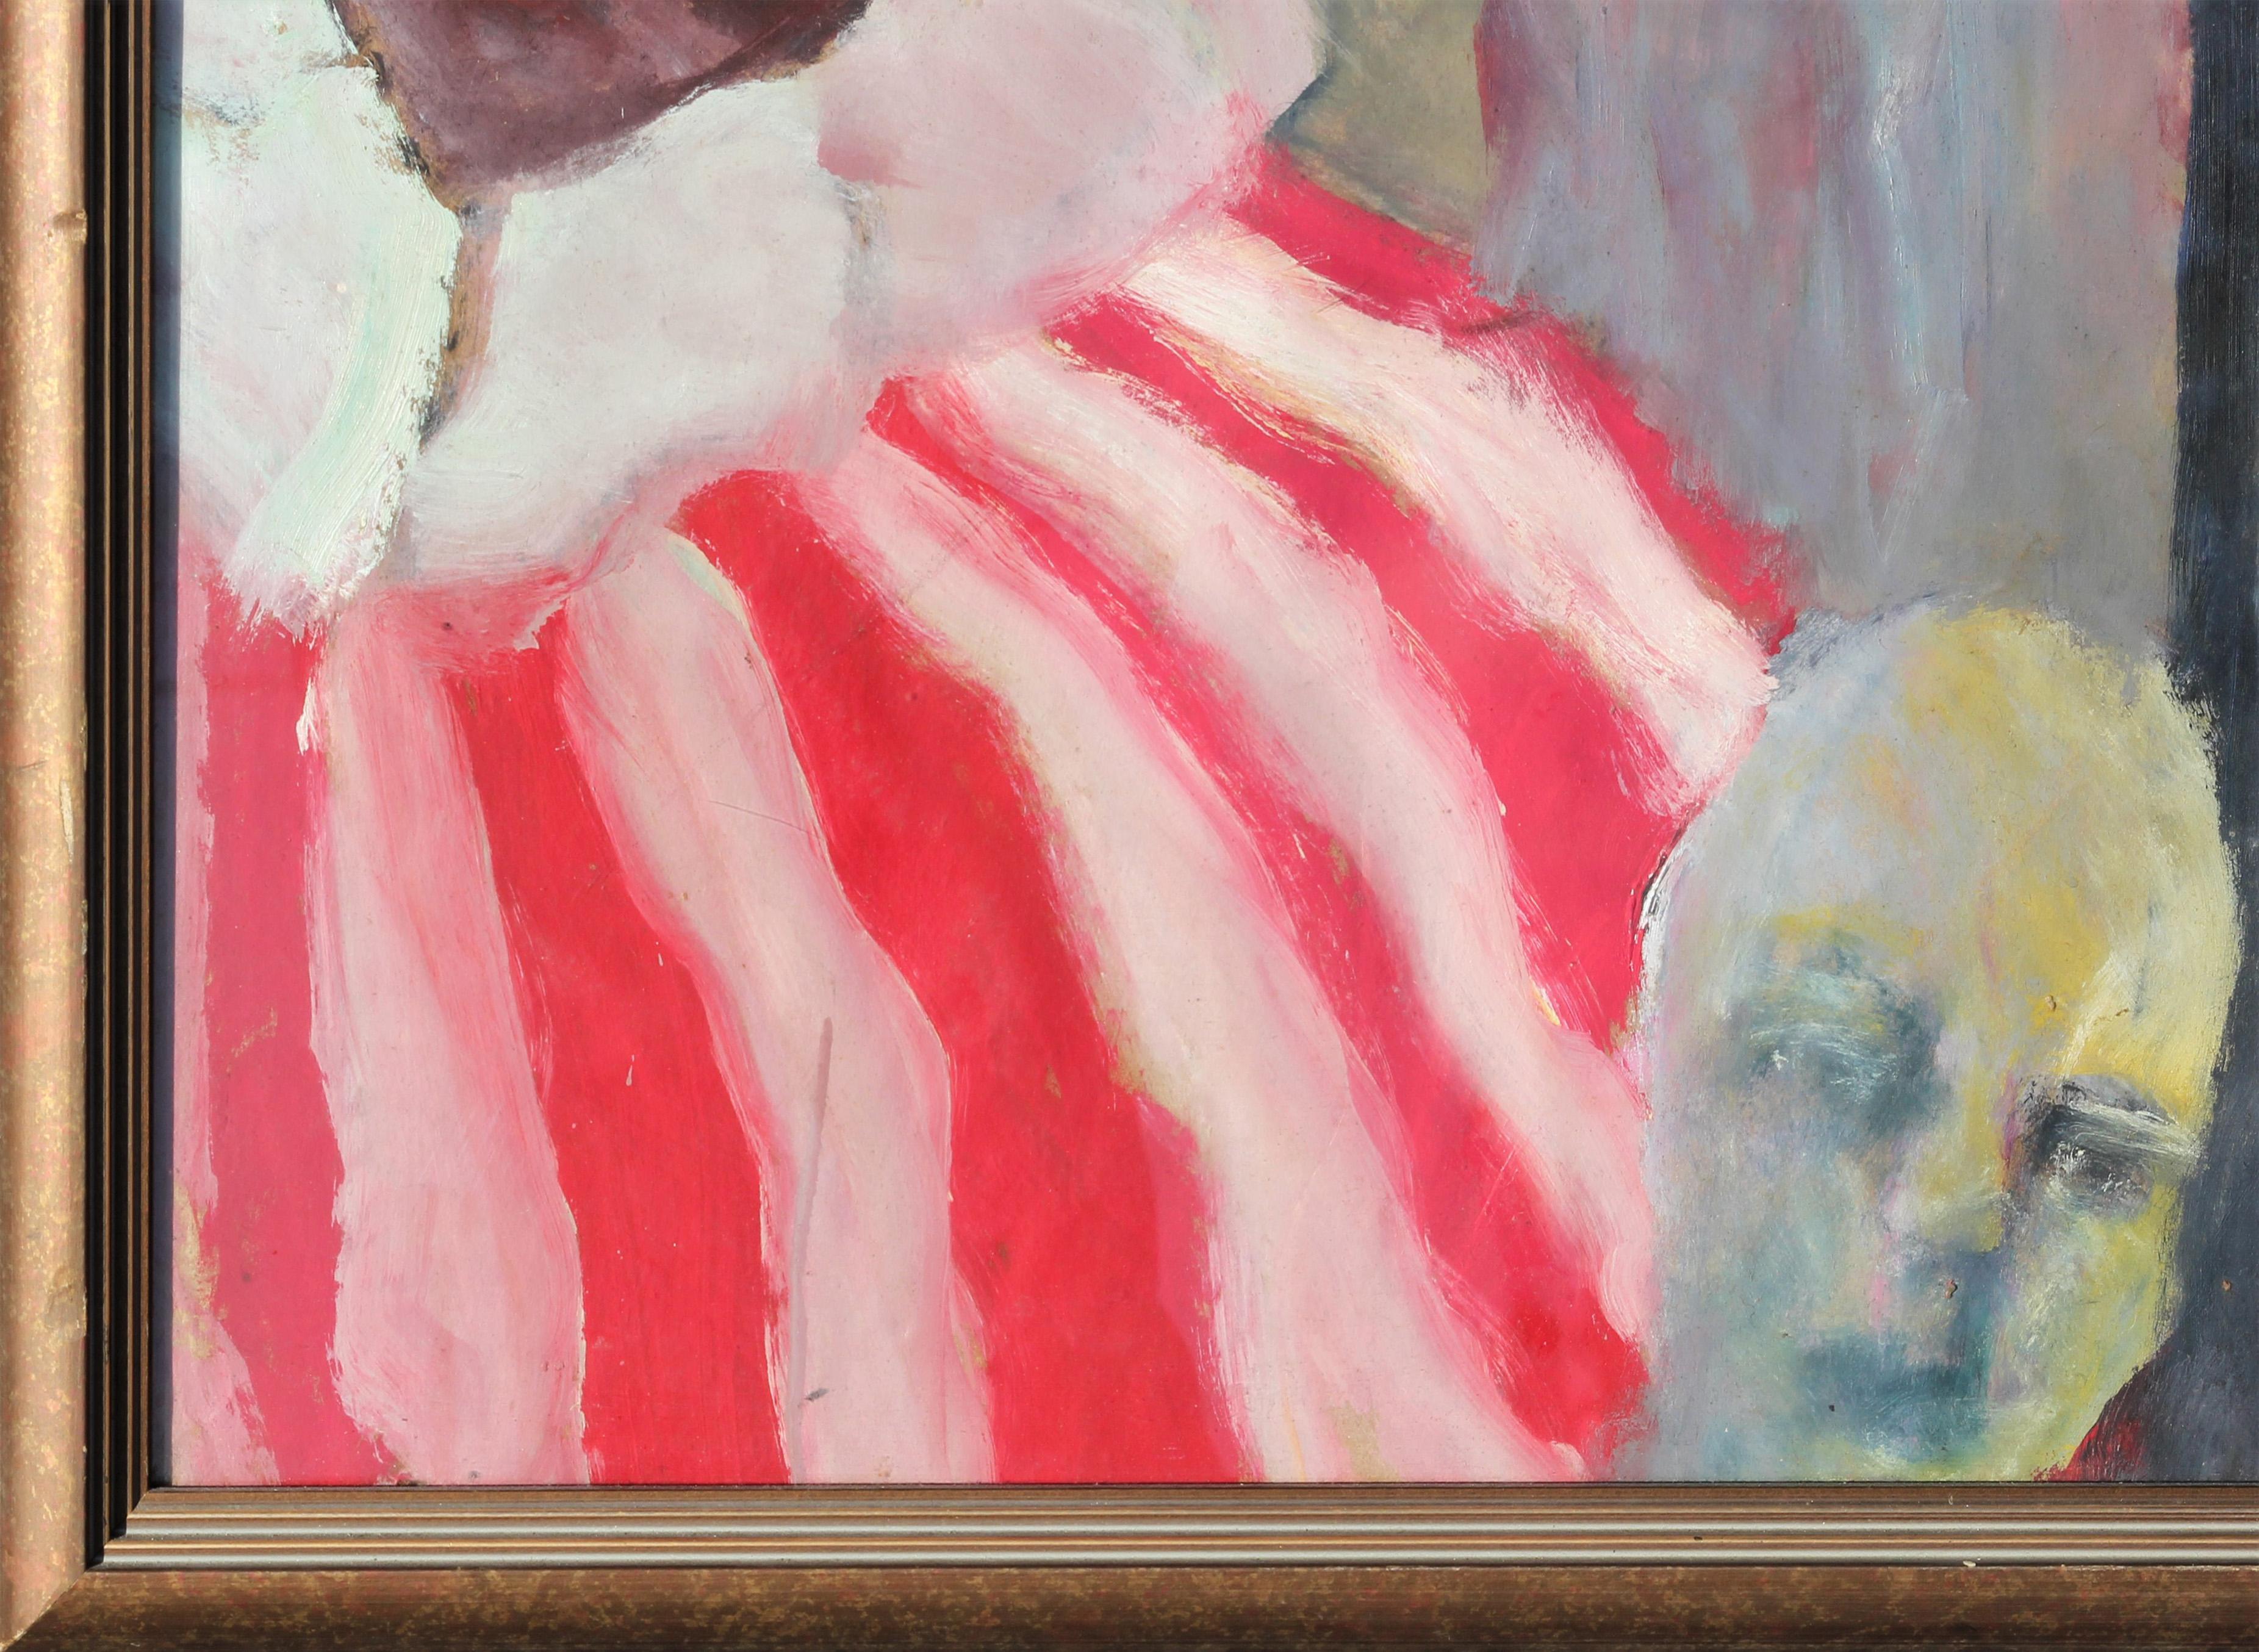 Peinture expressionniste abstraite surréaliste d'un groupe de clowns dans le style du peintre belge James Ensor. Combinant le macabre et le ludique, l'œuvre présente des clowns déformés parmi d'autres figures grotesques. Signé et daté par l'artiste